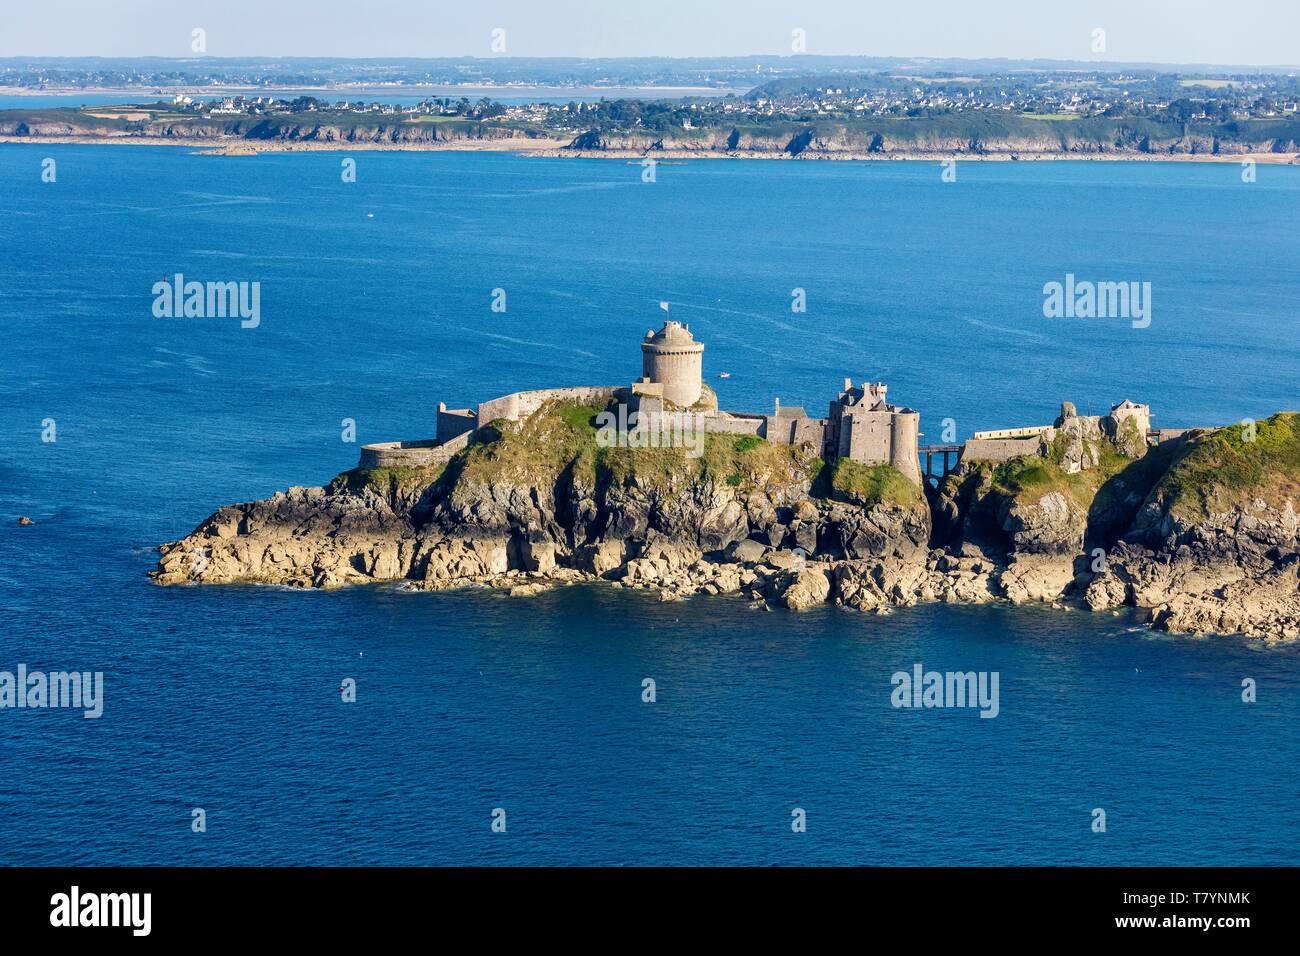 Francia, Cotes d'Armor, Plevenon, Fort la Latte, castillo fortificado en la Pointe de la Latte (vista aérea) Foto de stock